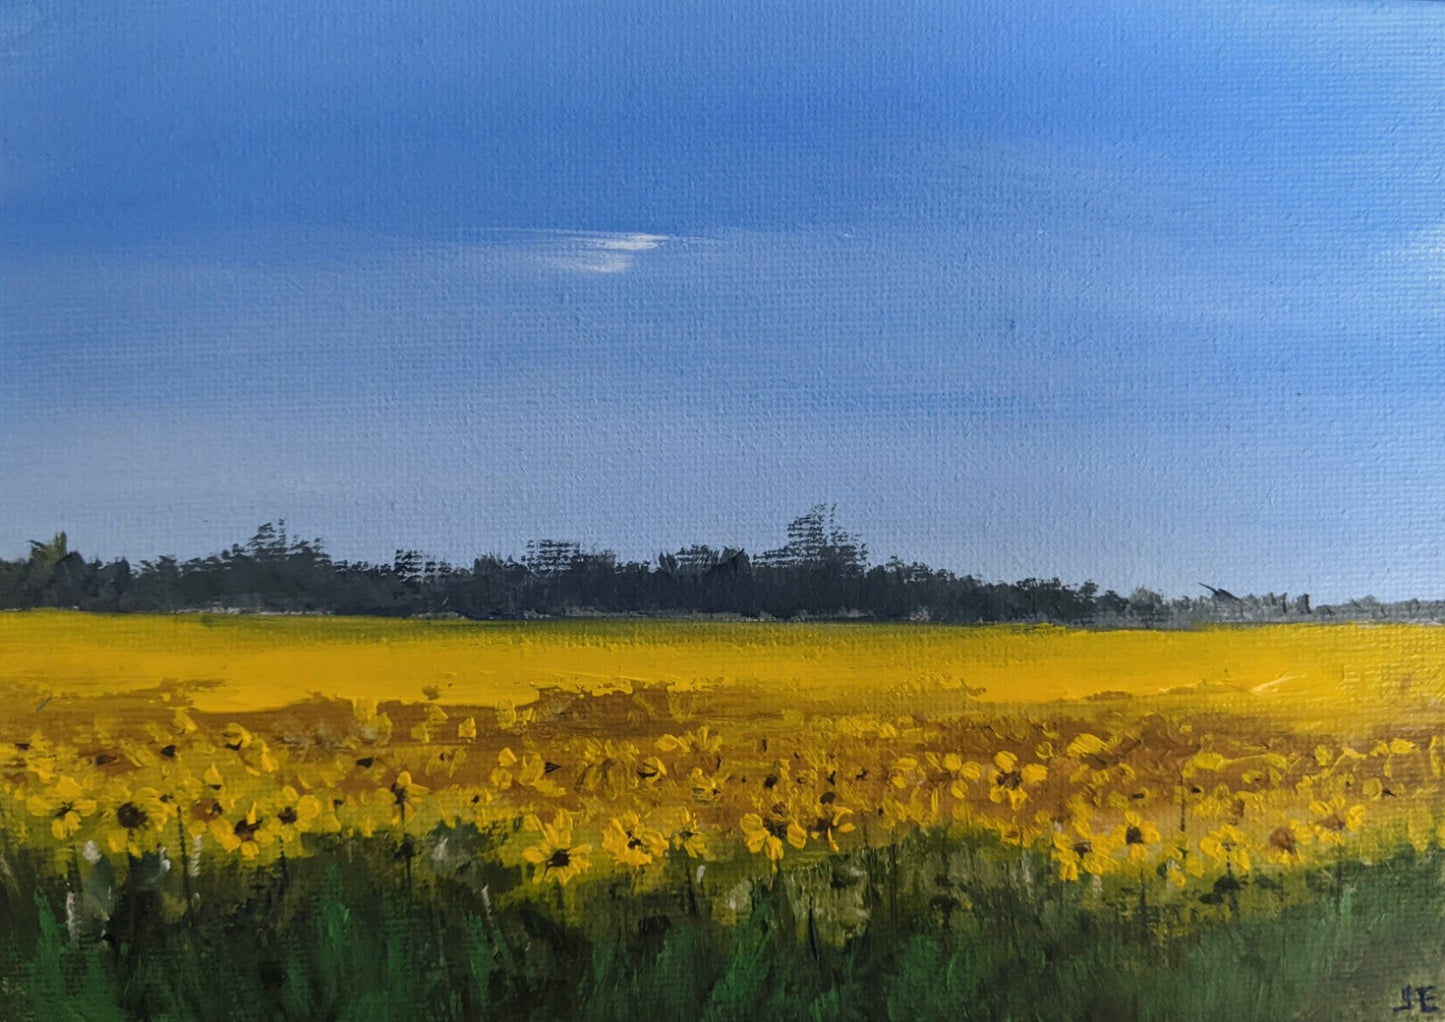 Miniature Sunflowers Landscape oil painting on canvas board, by Jo Earl